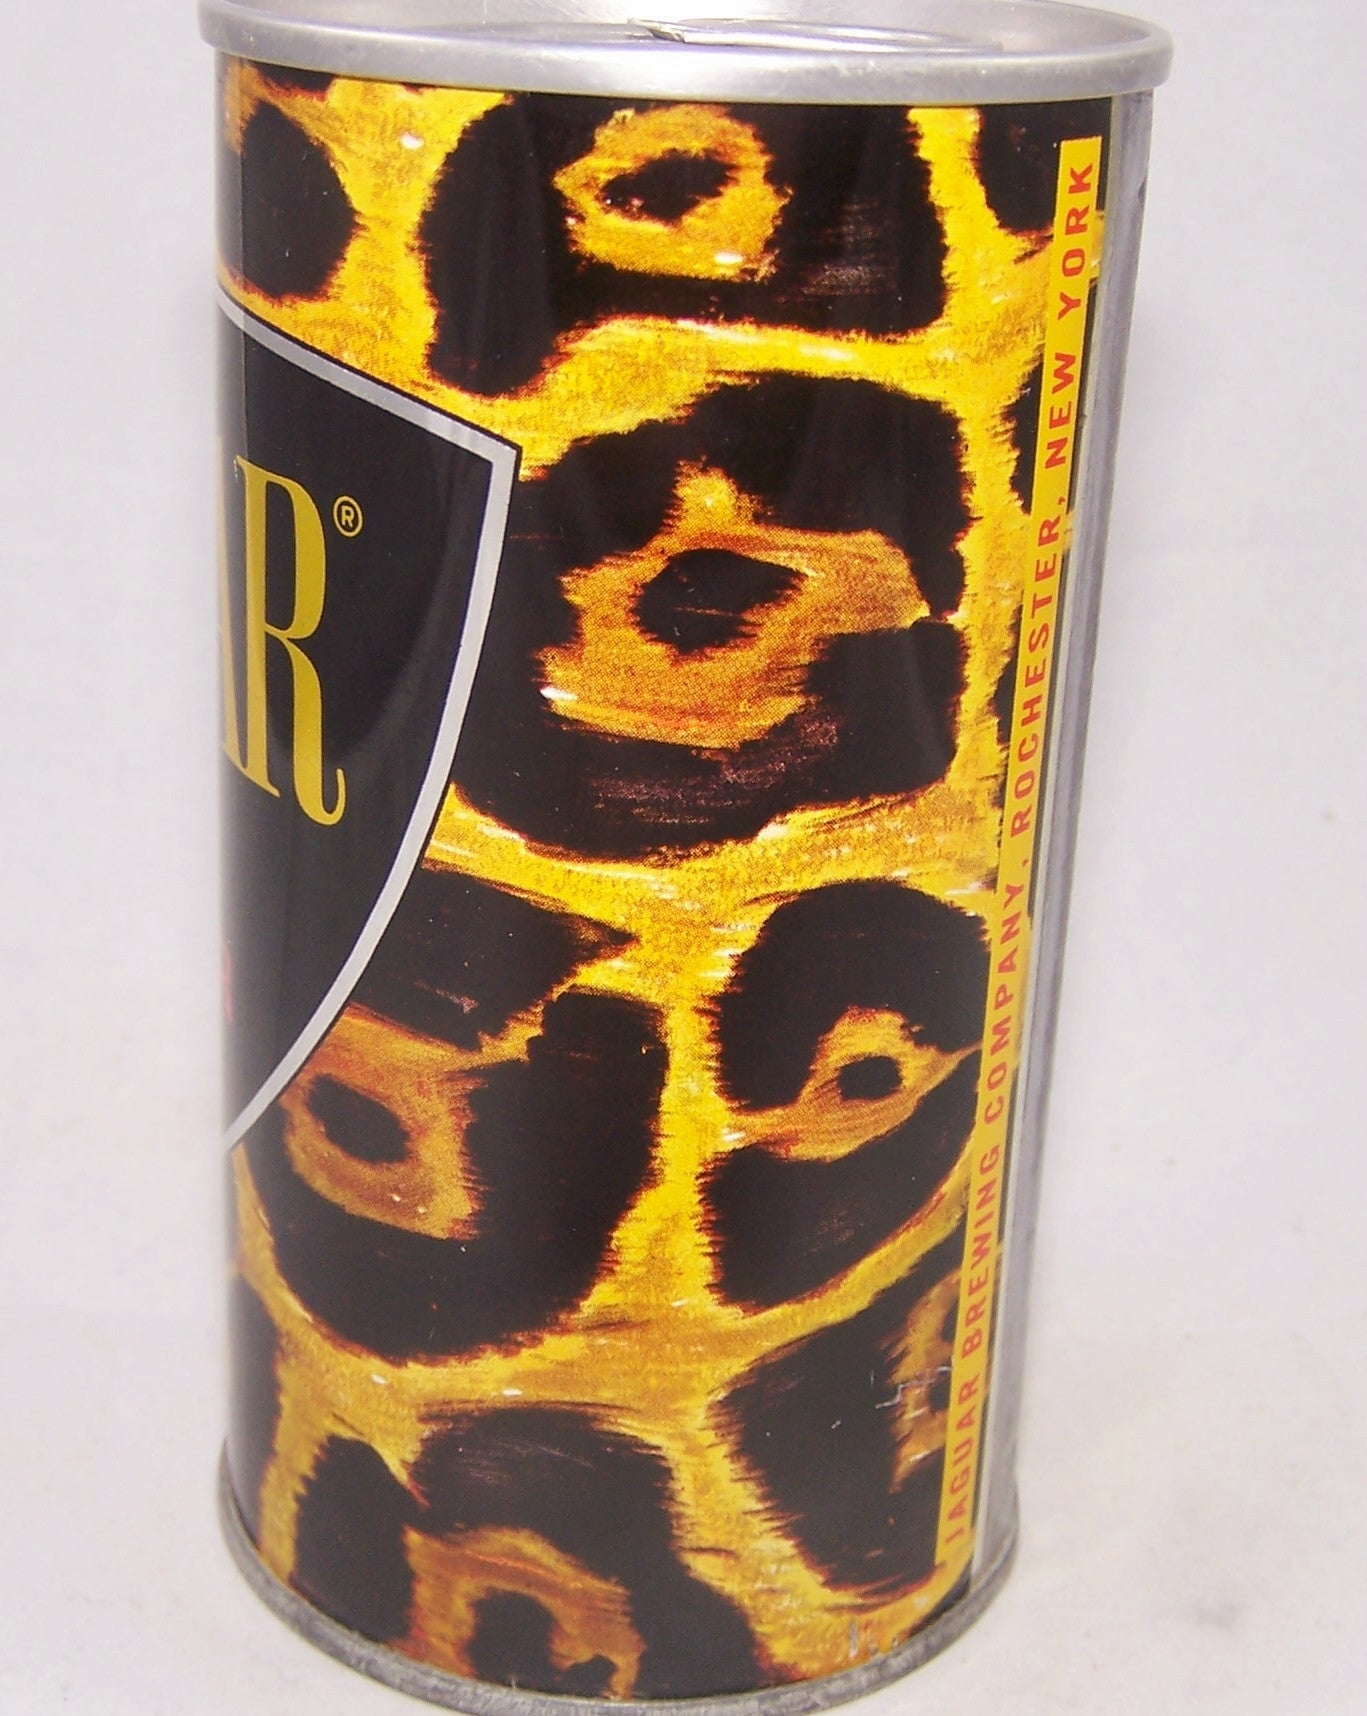 Jaguar Malt Liquor, USBC II 82-23, Grade A1+ Sold on 12/22/17